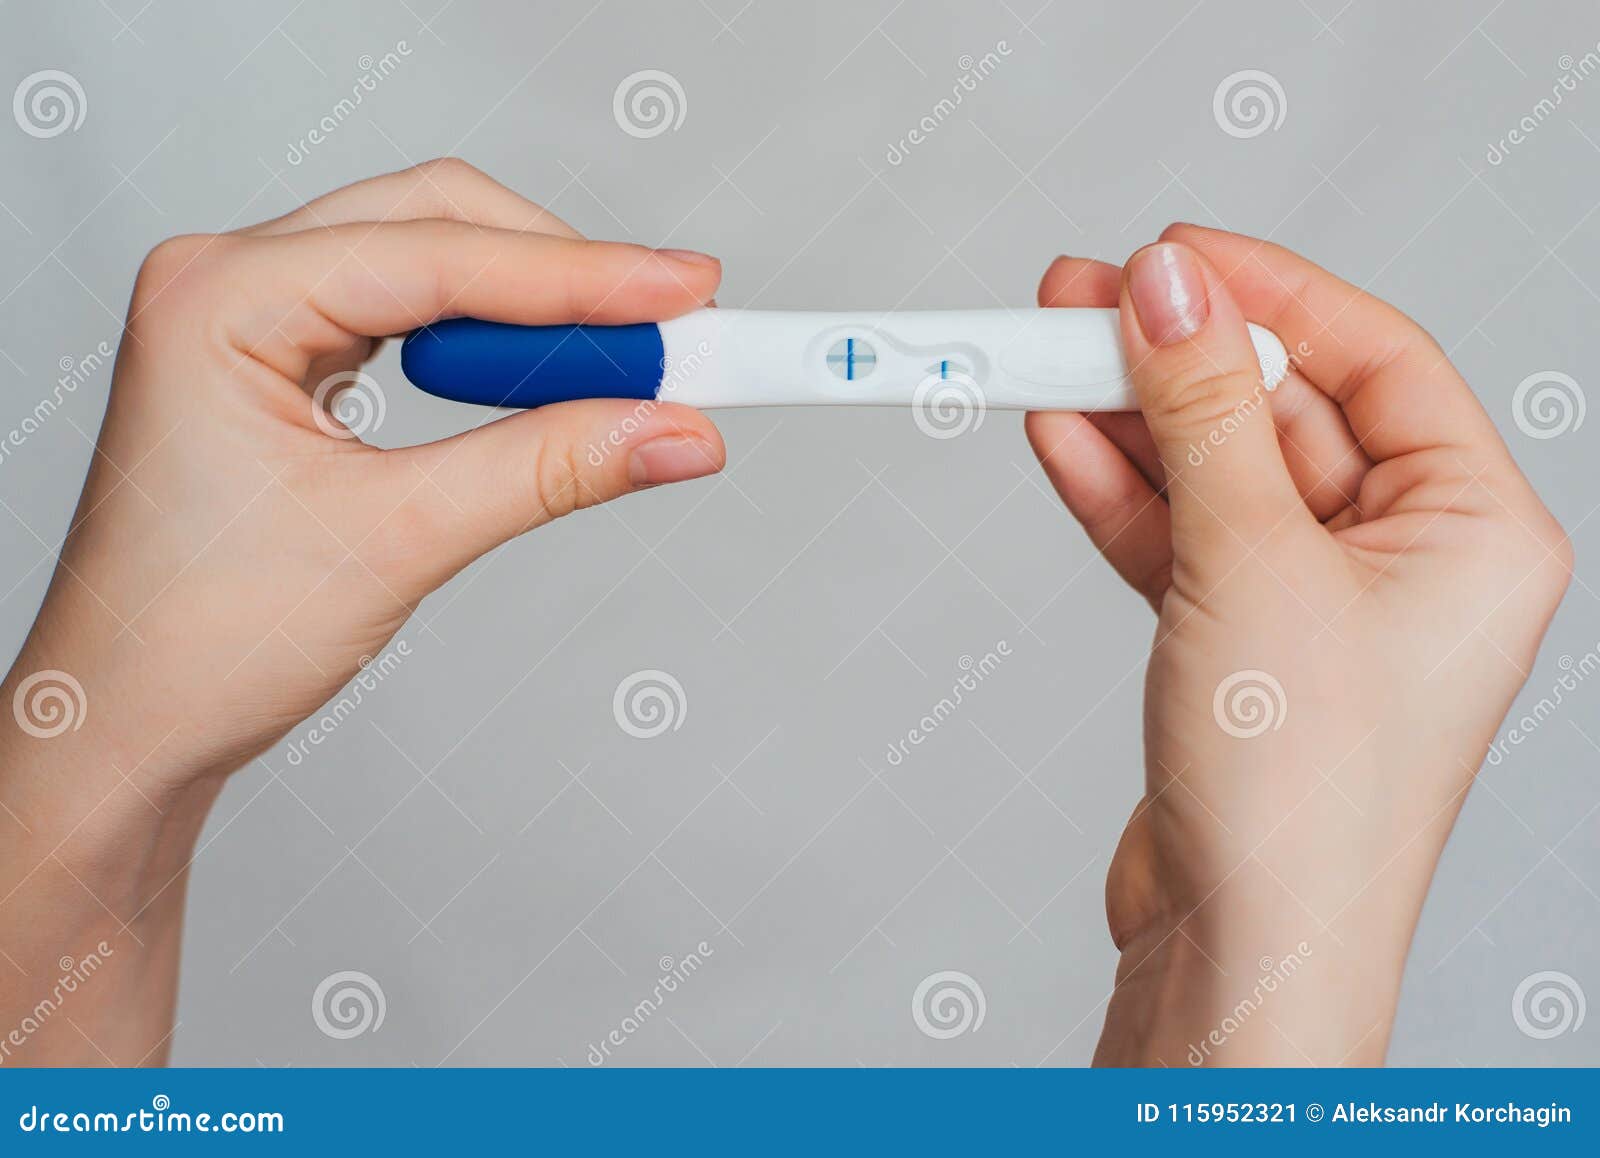 Тест 2 полоски в руке. Рука с тестом на беременность. Девушка с тестом на беременность в руках. Тест на беременность в руке.